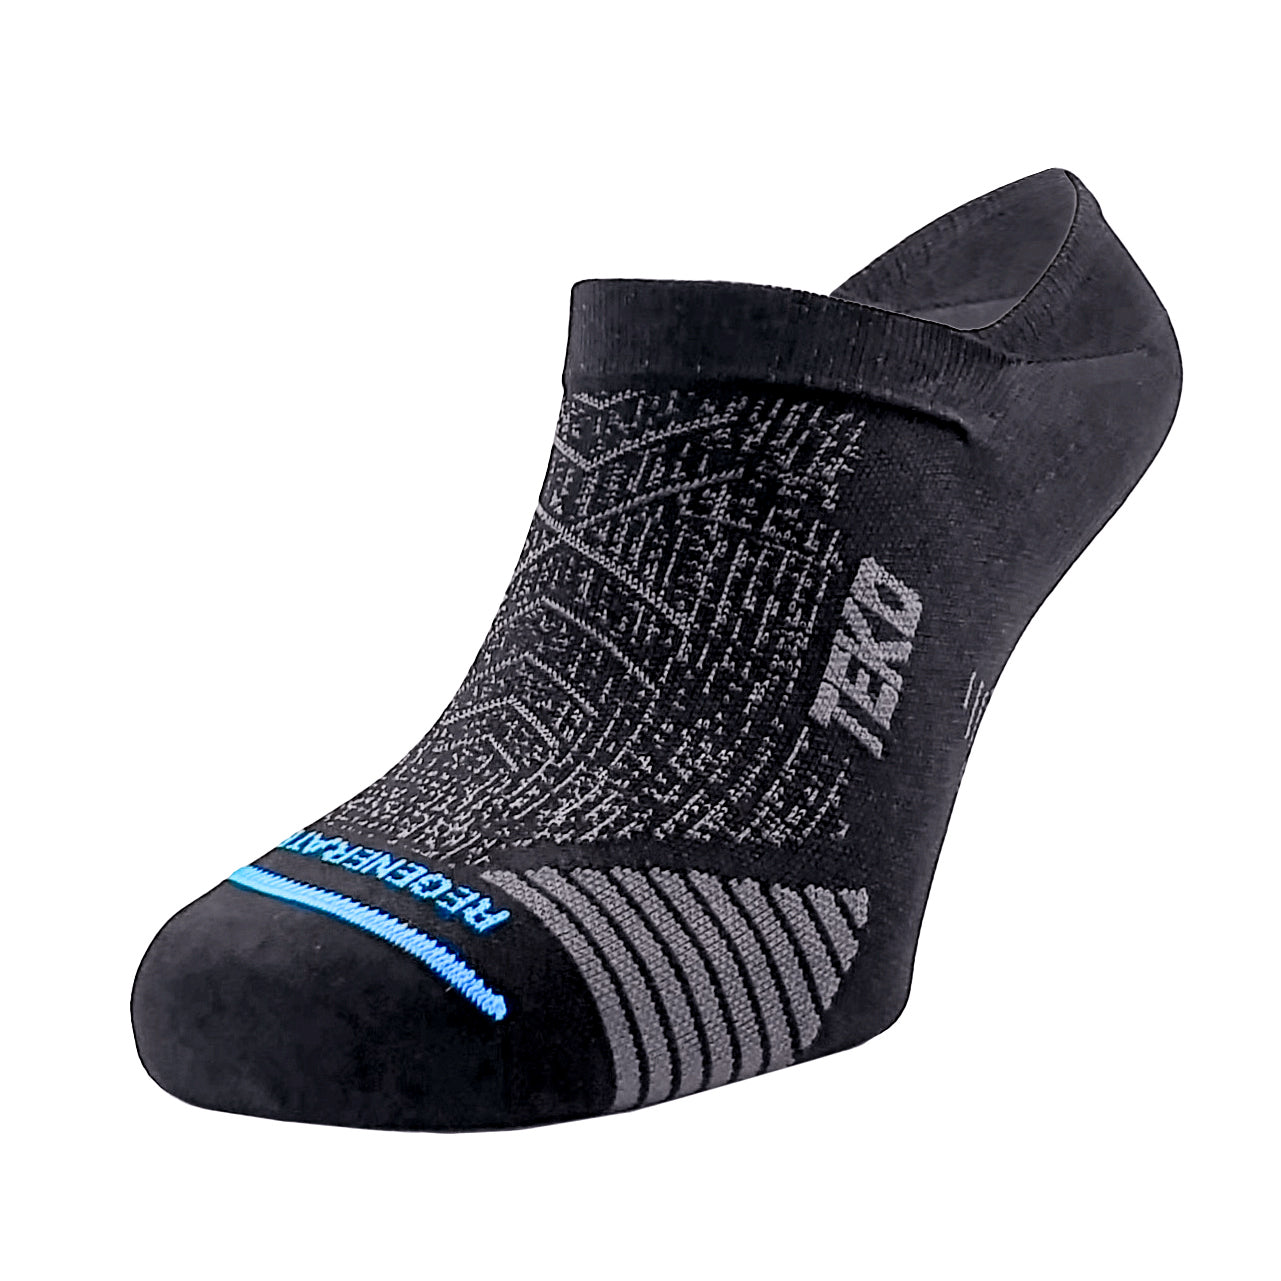 Odlo Socks Short Ceramicool Run Black Trail running socks : Snowleader